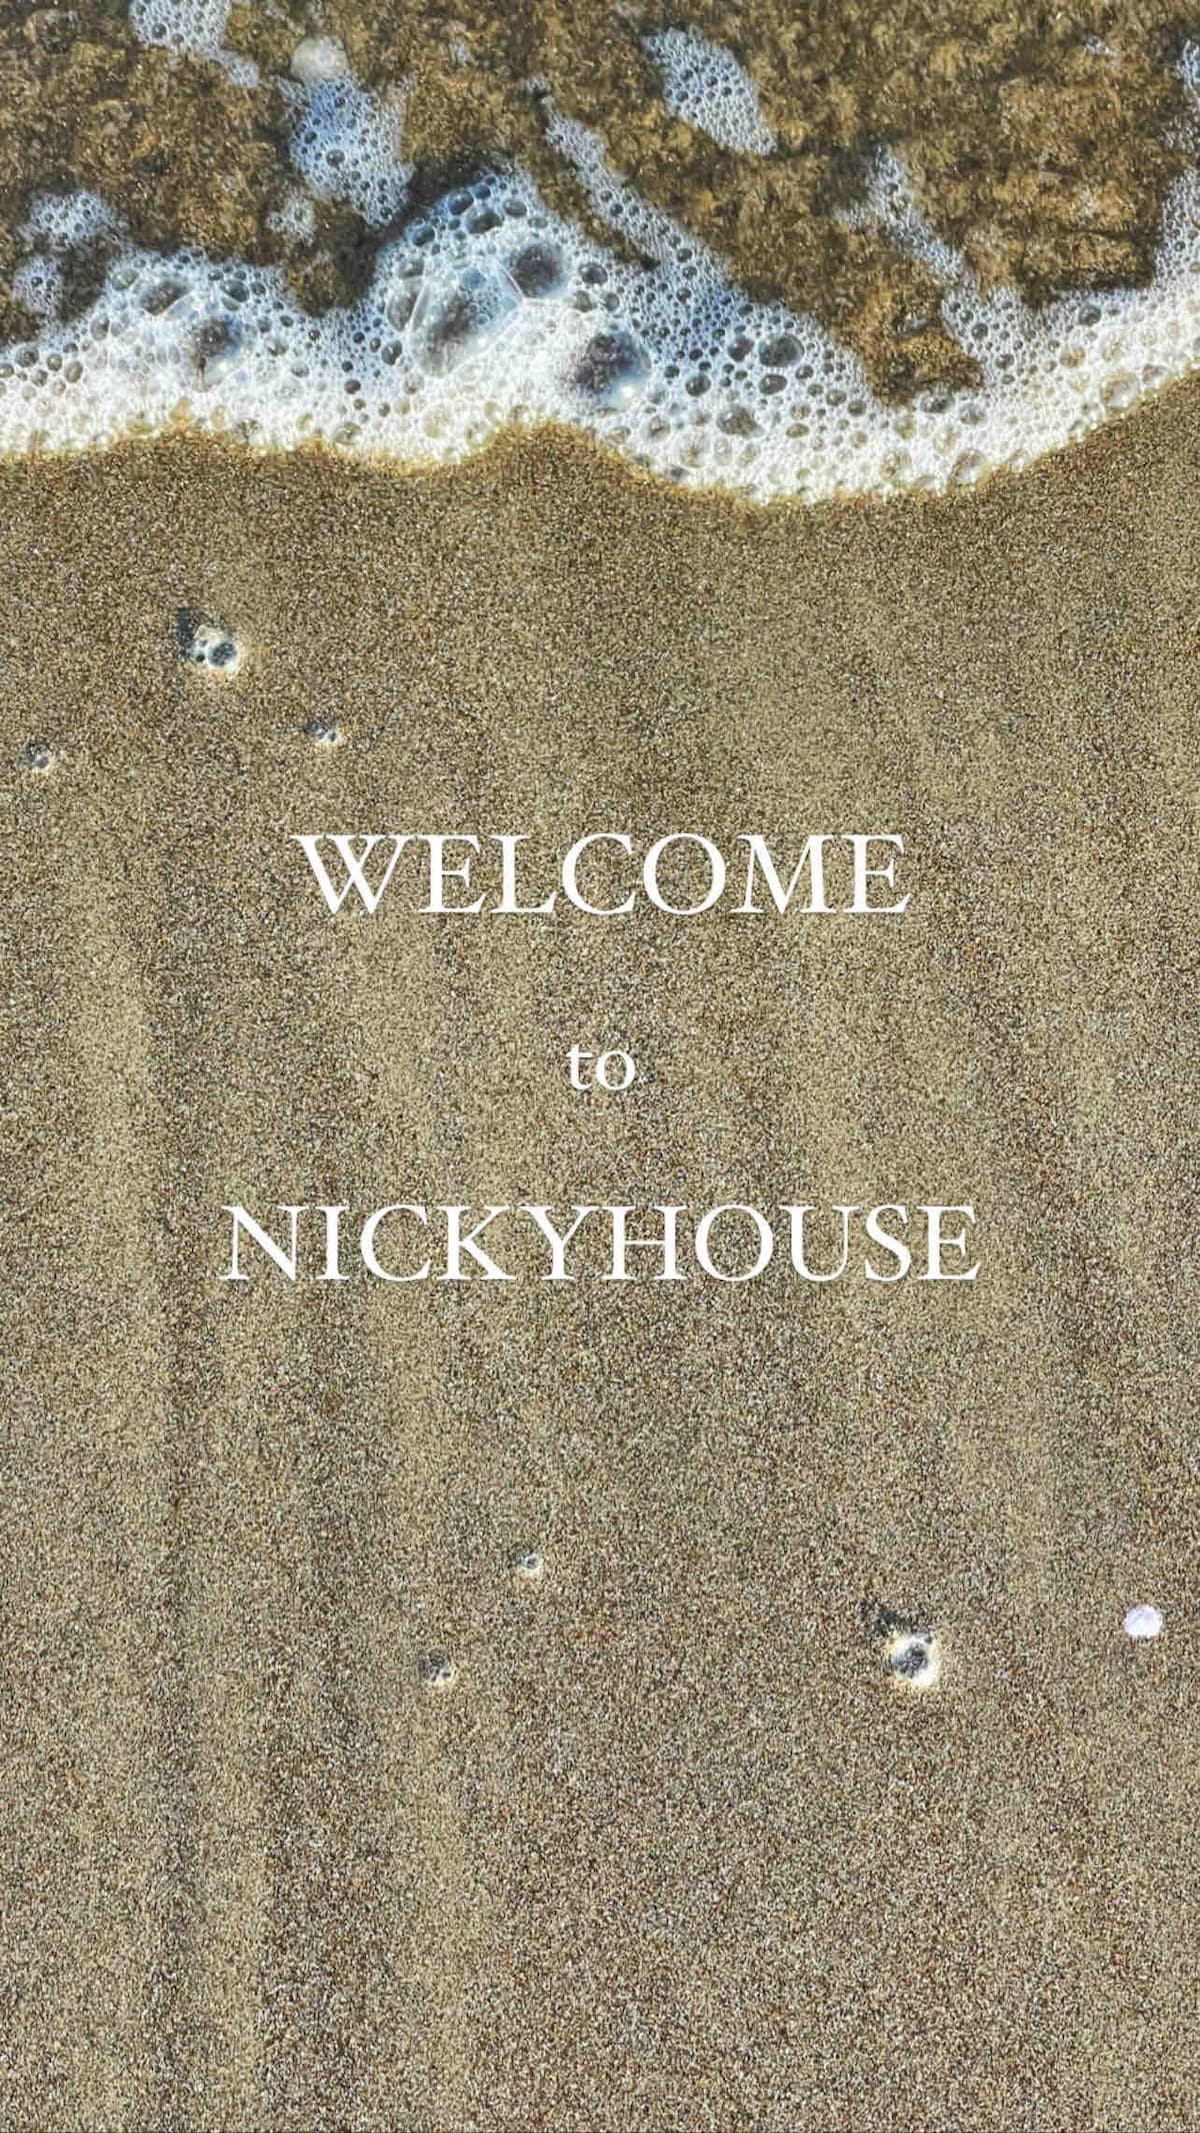 Nicky House